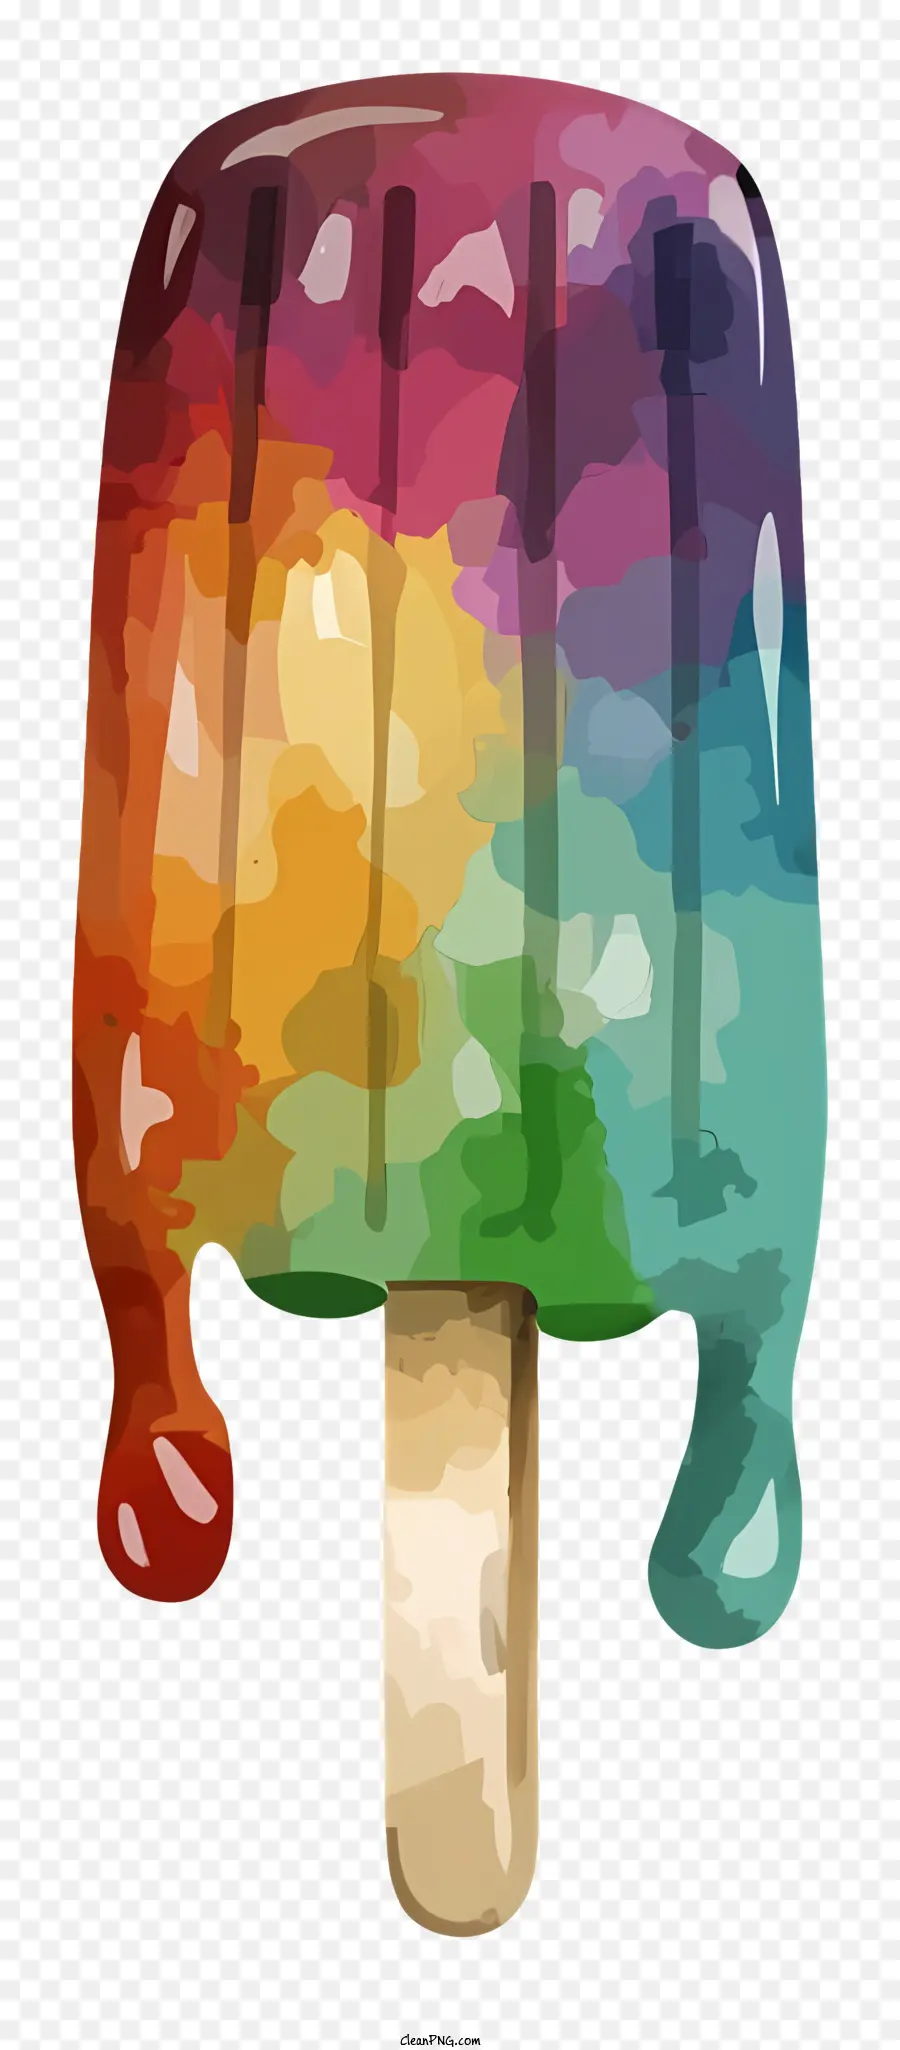 kem - Cầu vồng popsicle với nhỏ giọt đầy màu sắc trên gậy